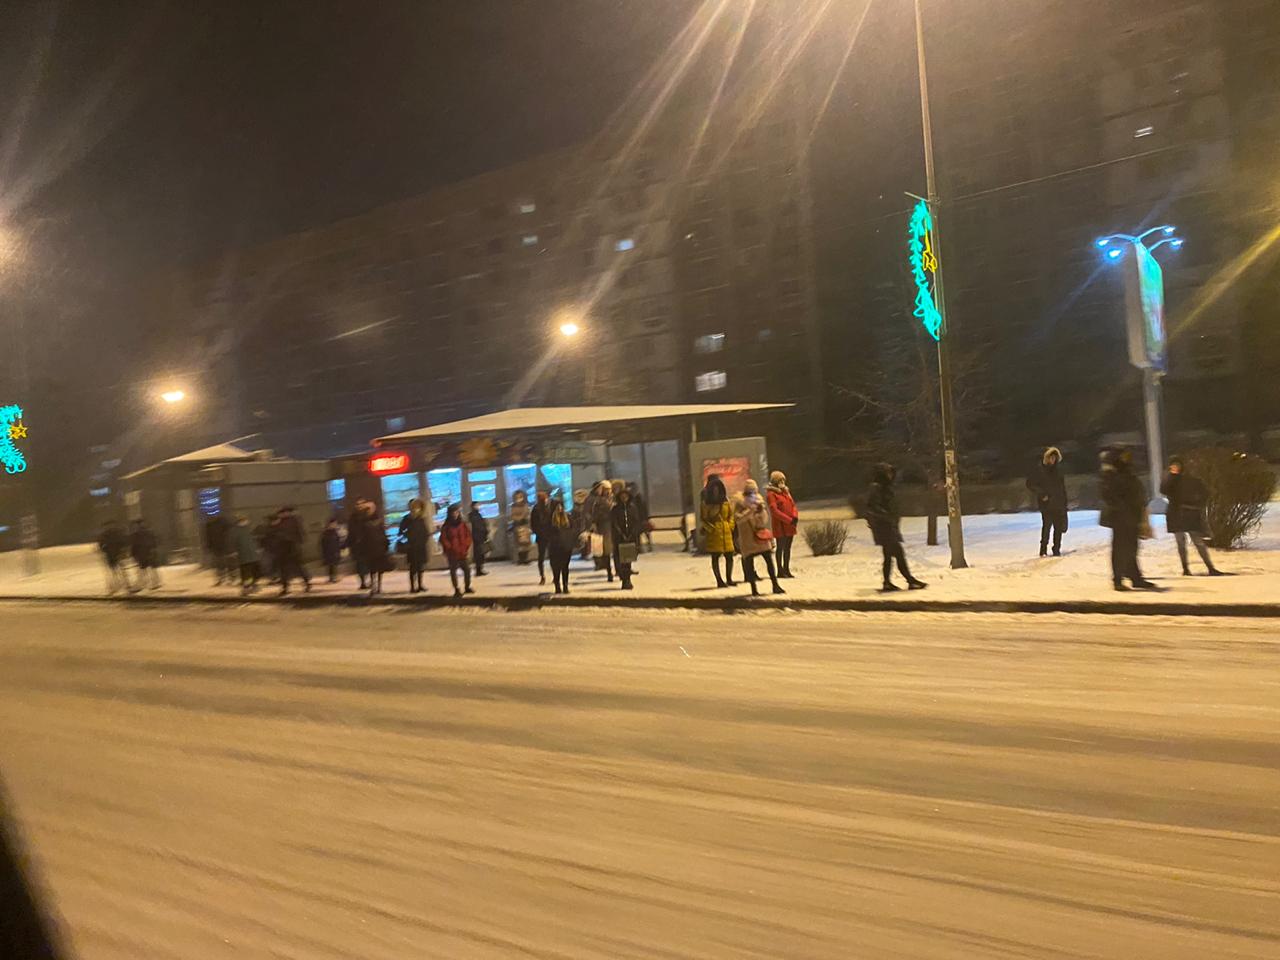 Власти Новокузнецка меняют маршруты автобусов из-за провального старта транспортной реформы